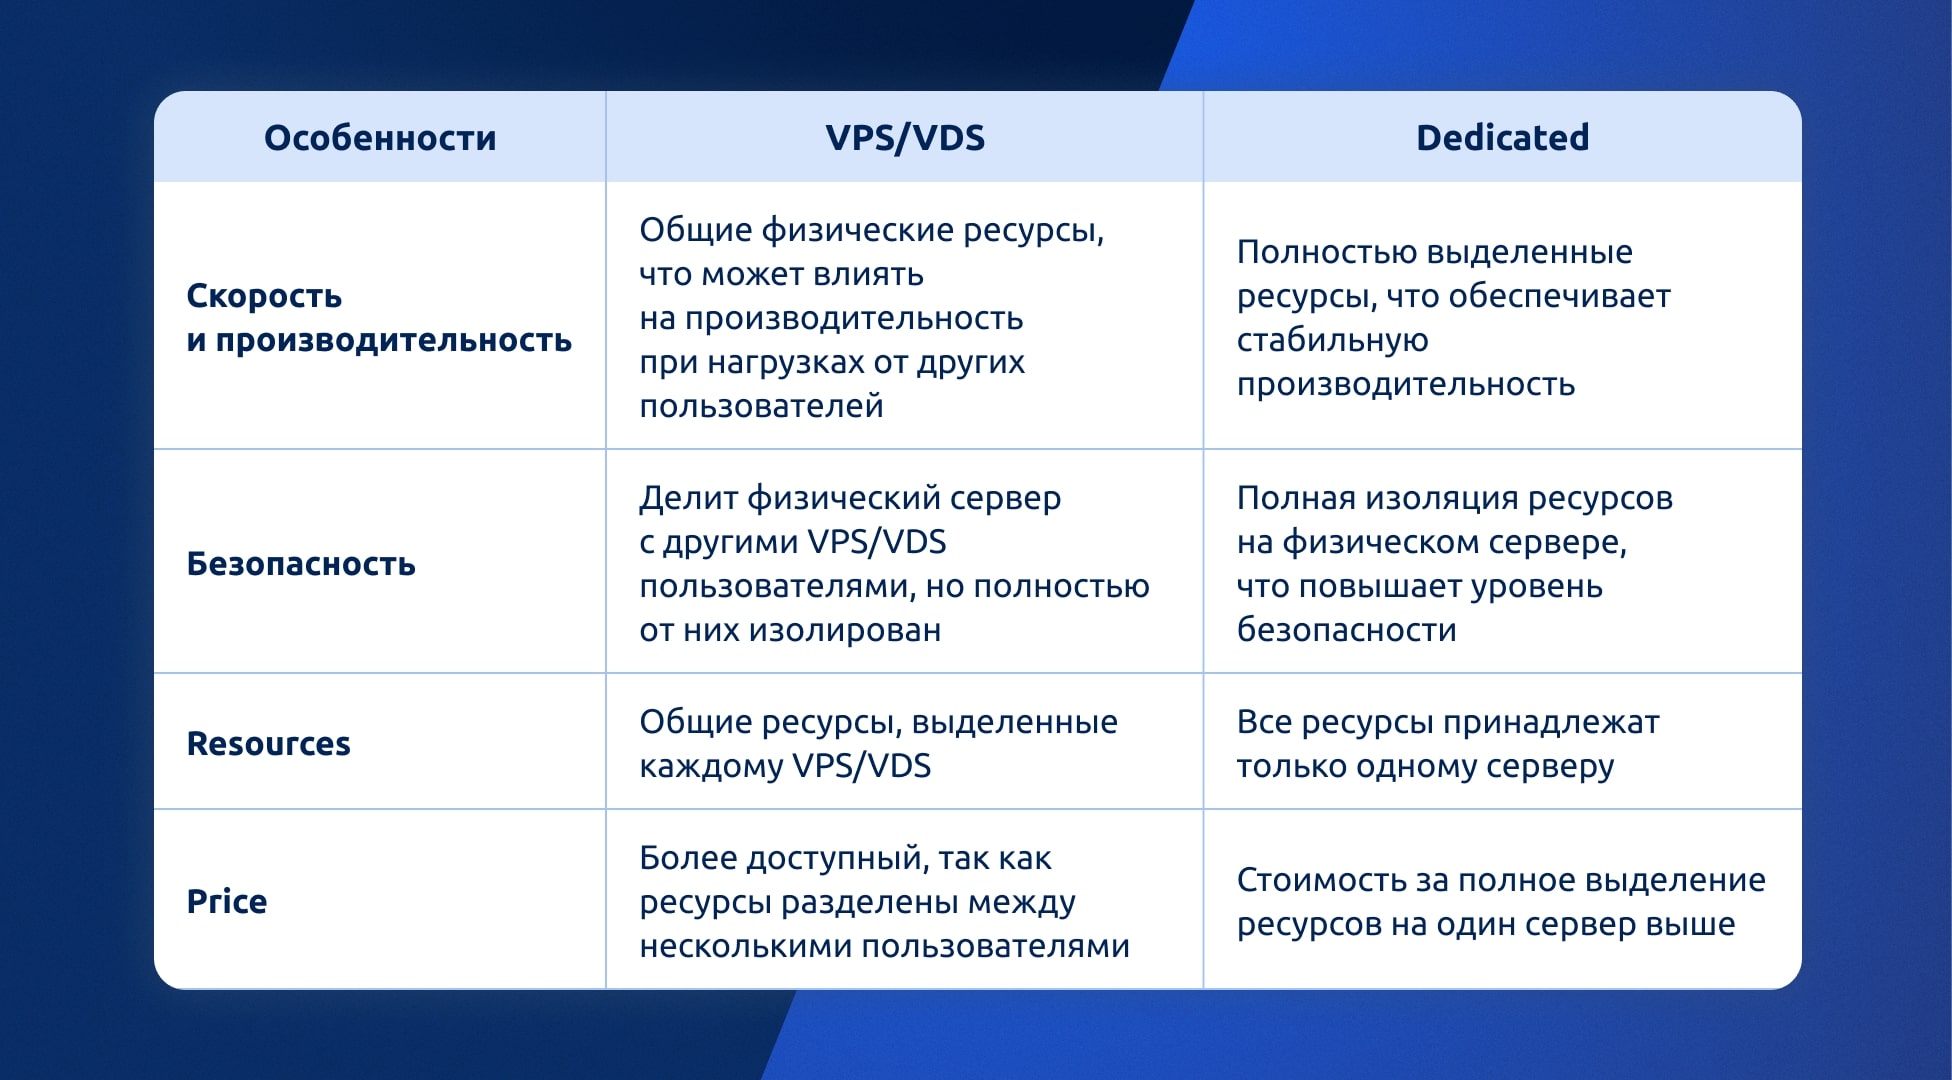 Отличия между VPS/VDS и выделенным сервером в таблице